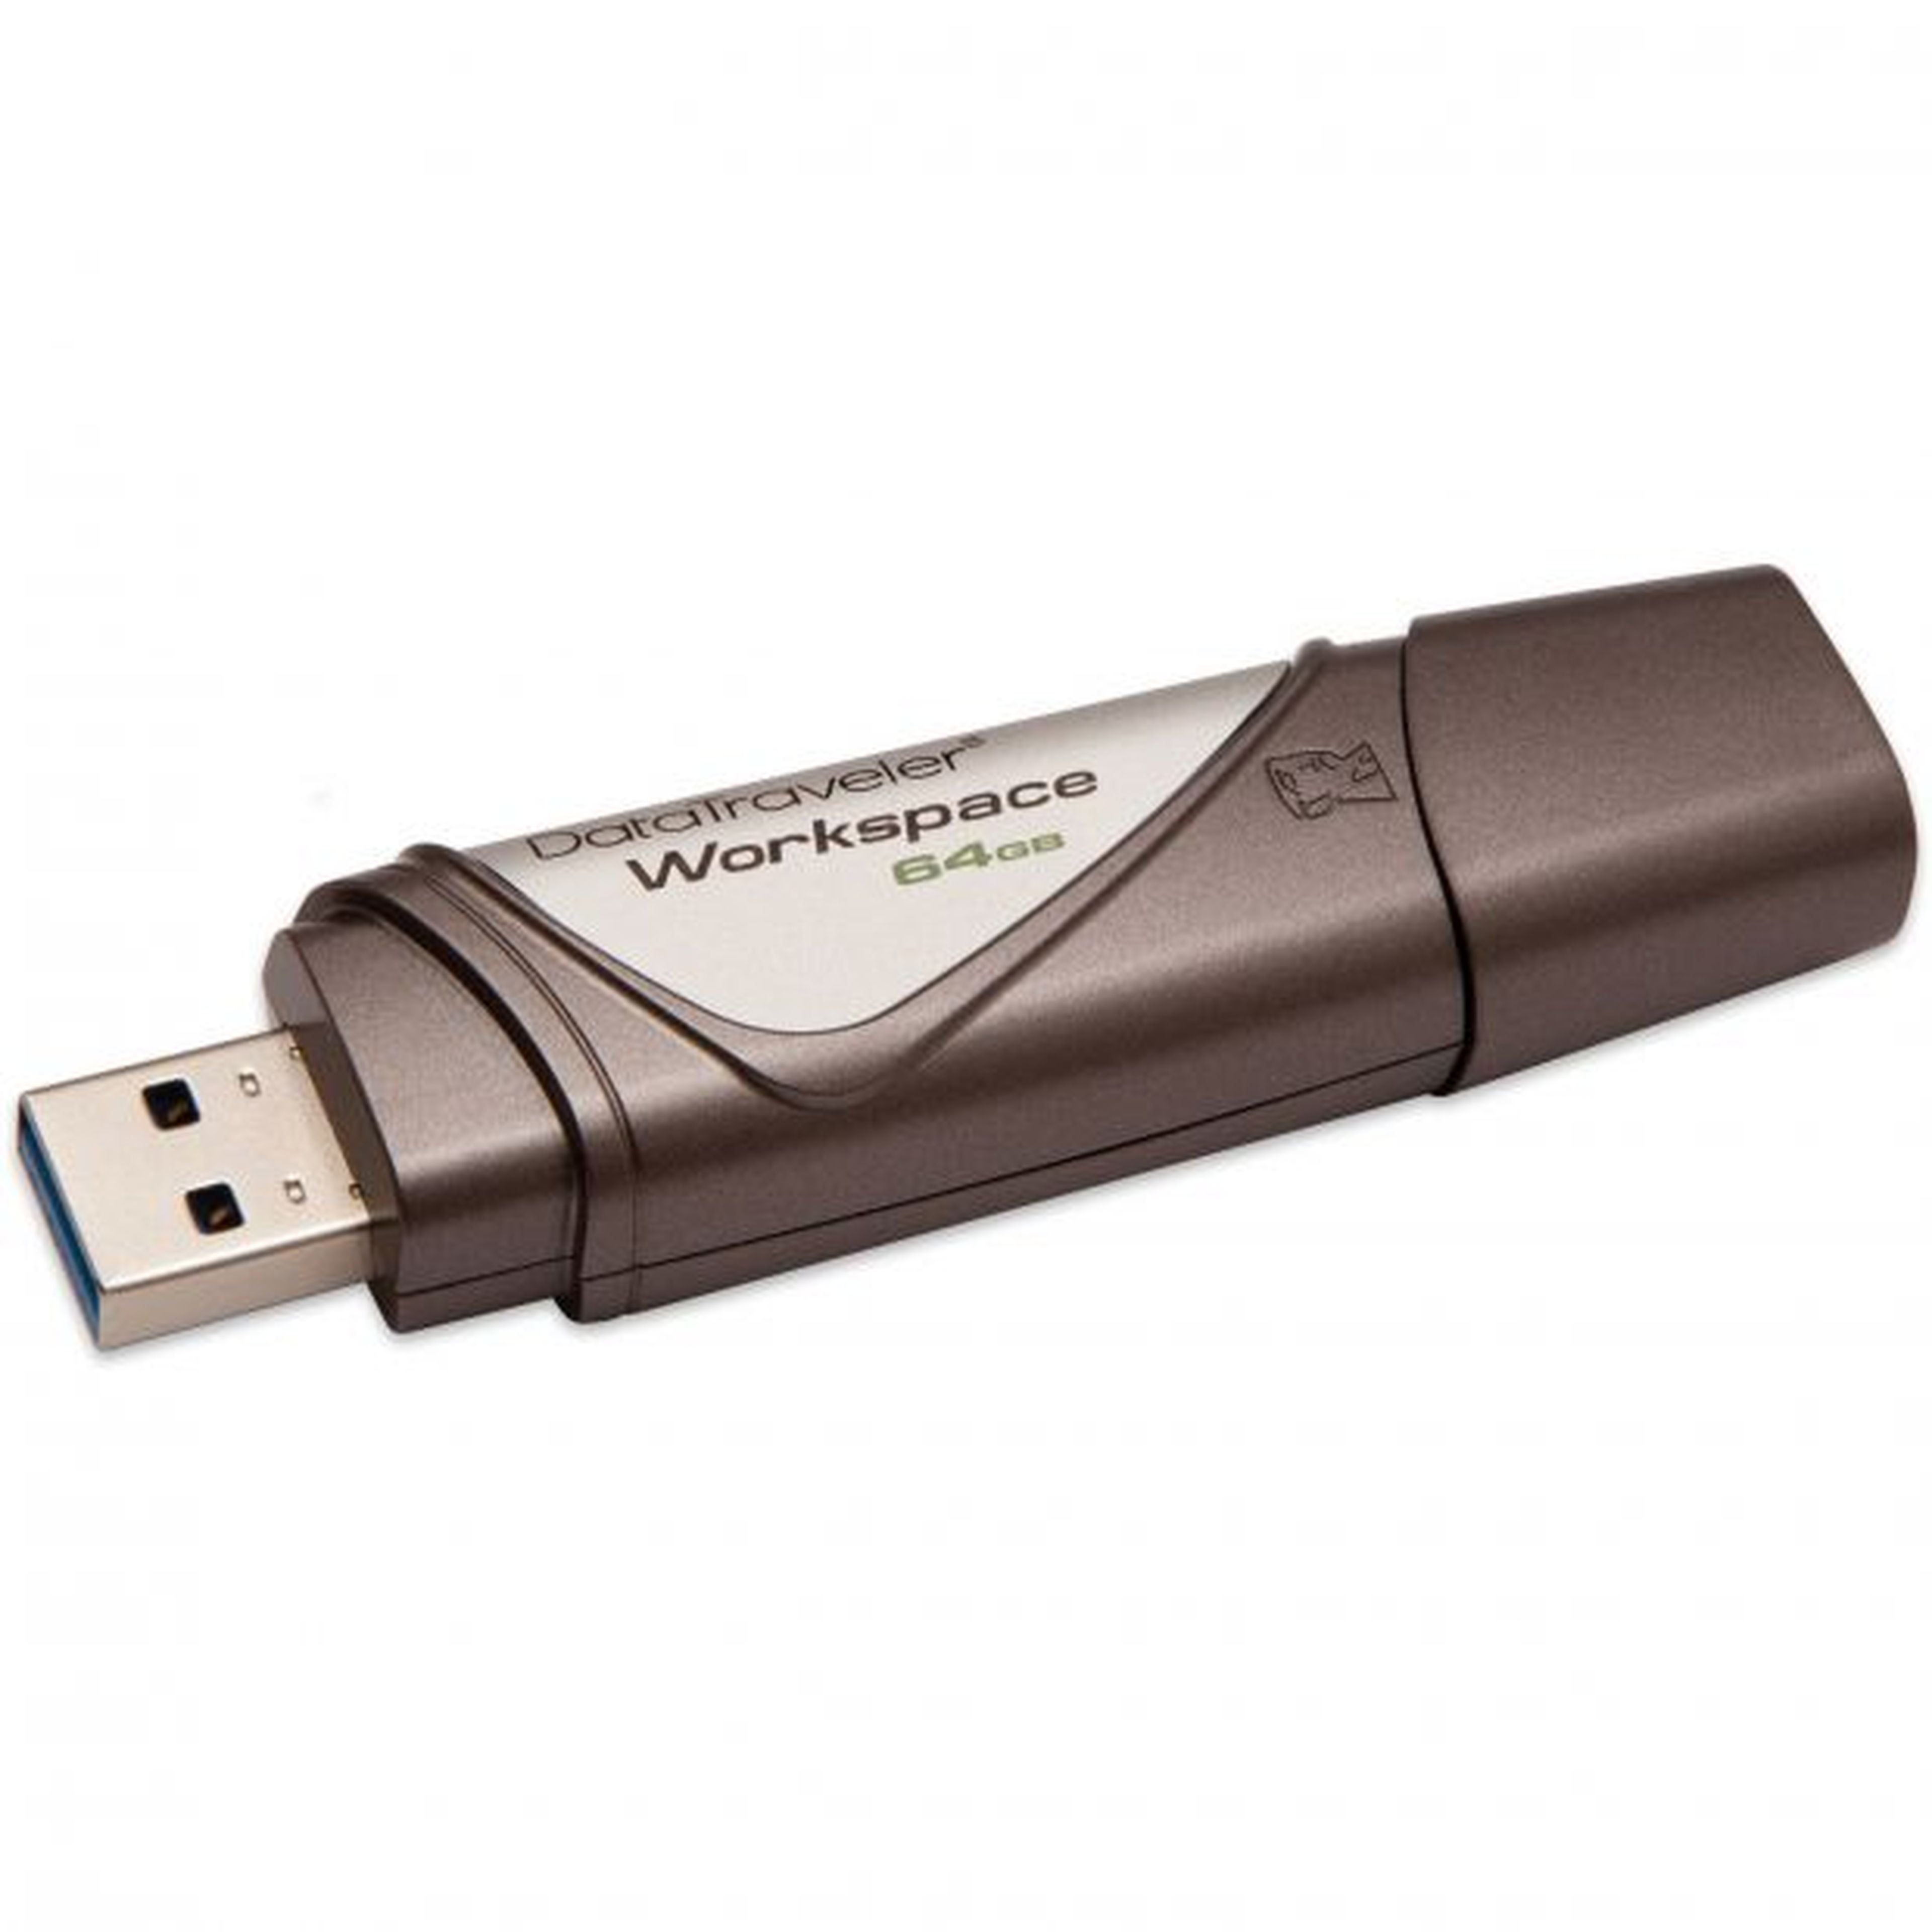 Usaremos una llave USB Kingston DataTraveller Workspace de 32GB aunque en la foto aparezca 64GB